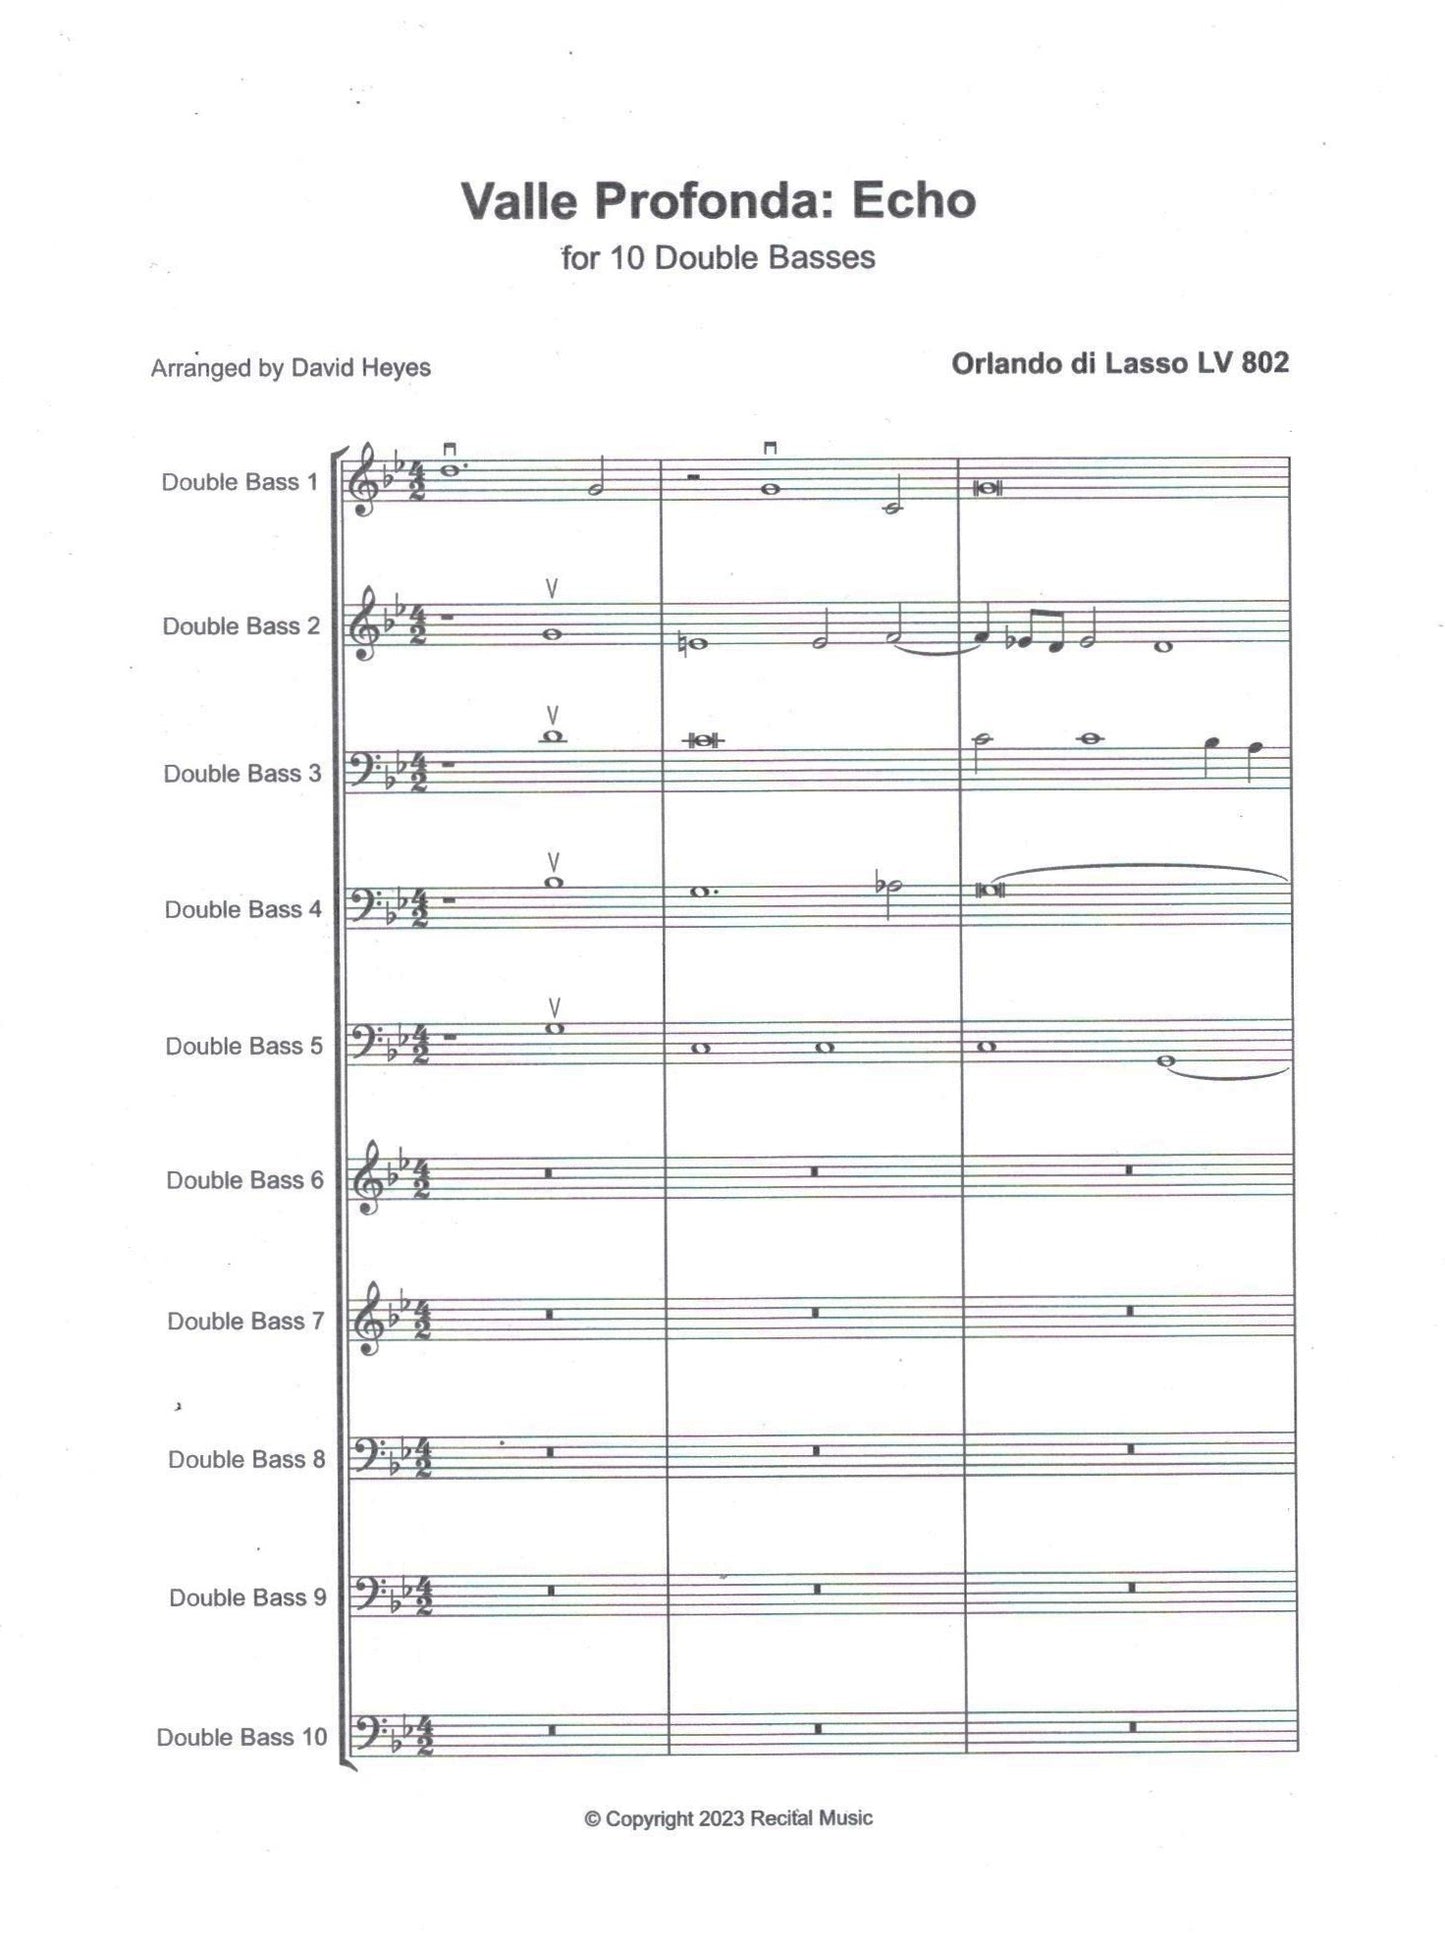 Music for 10 Double Basses (Antonio Lotti, Anon. 17th-century, Orlando di Lasso)